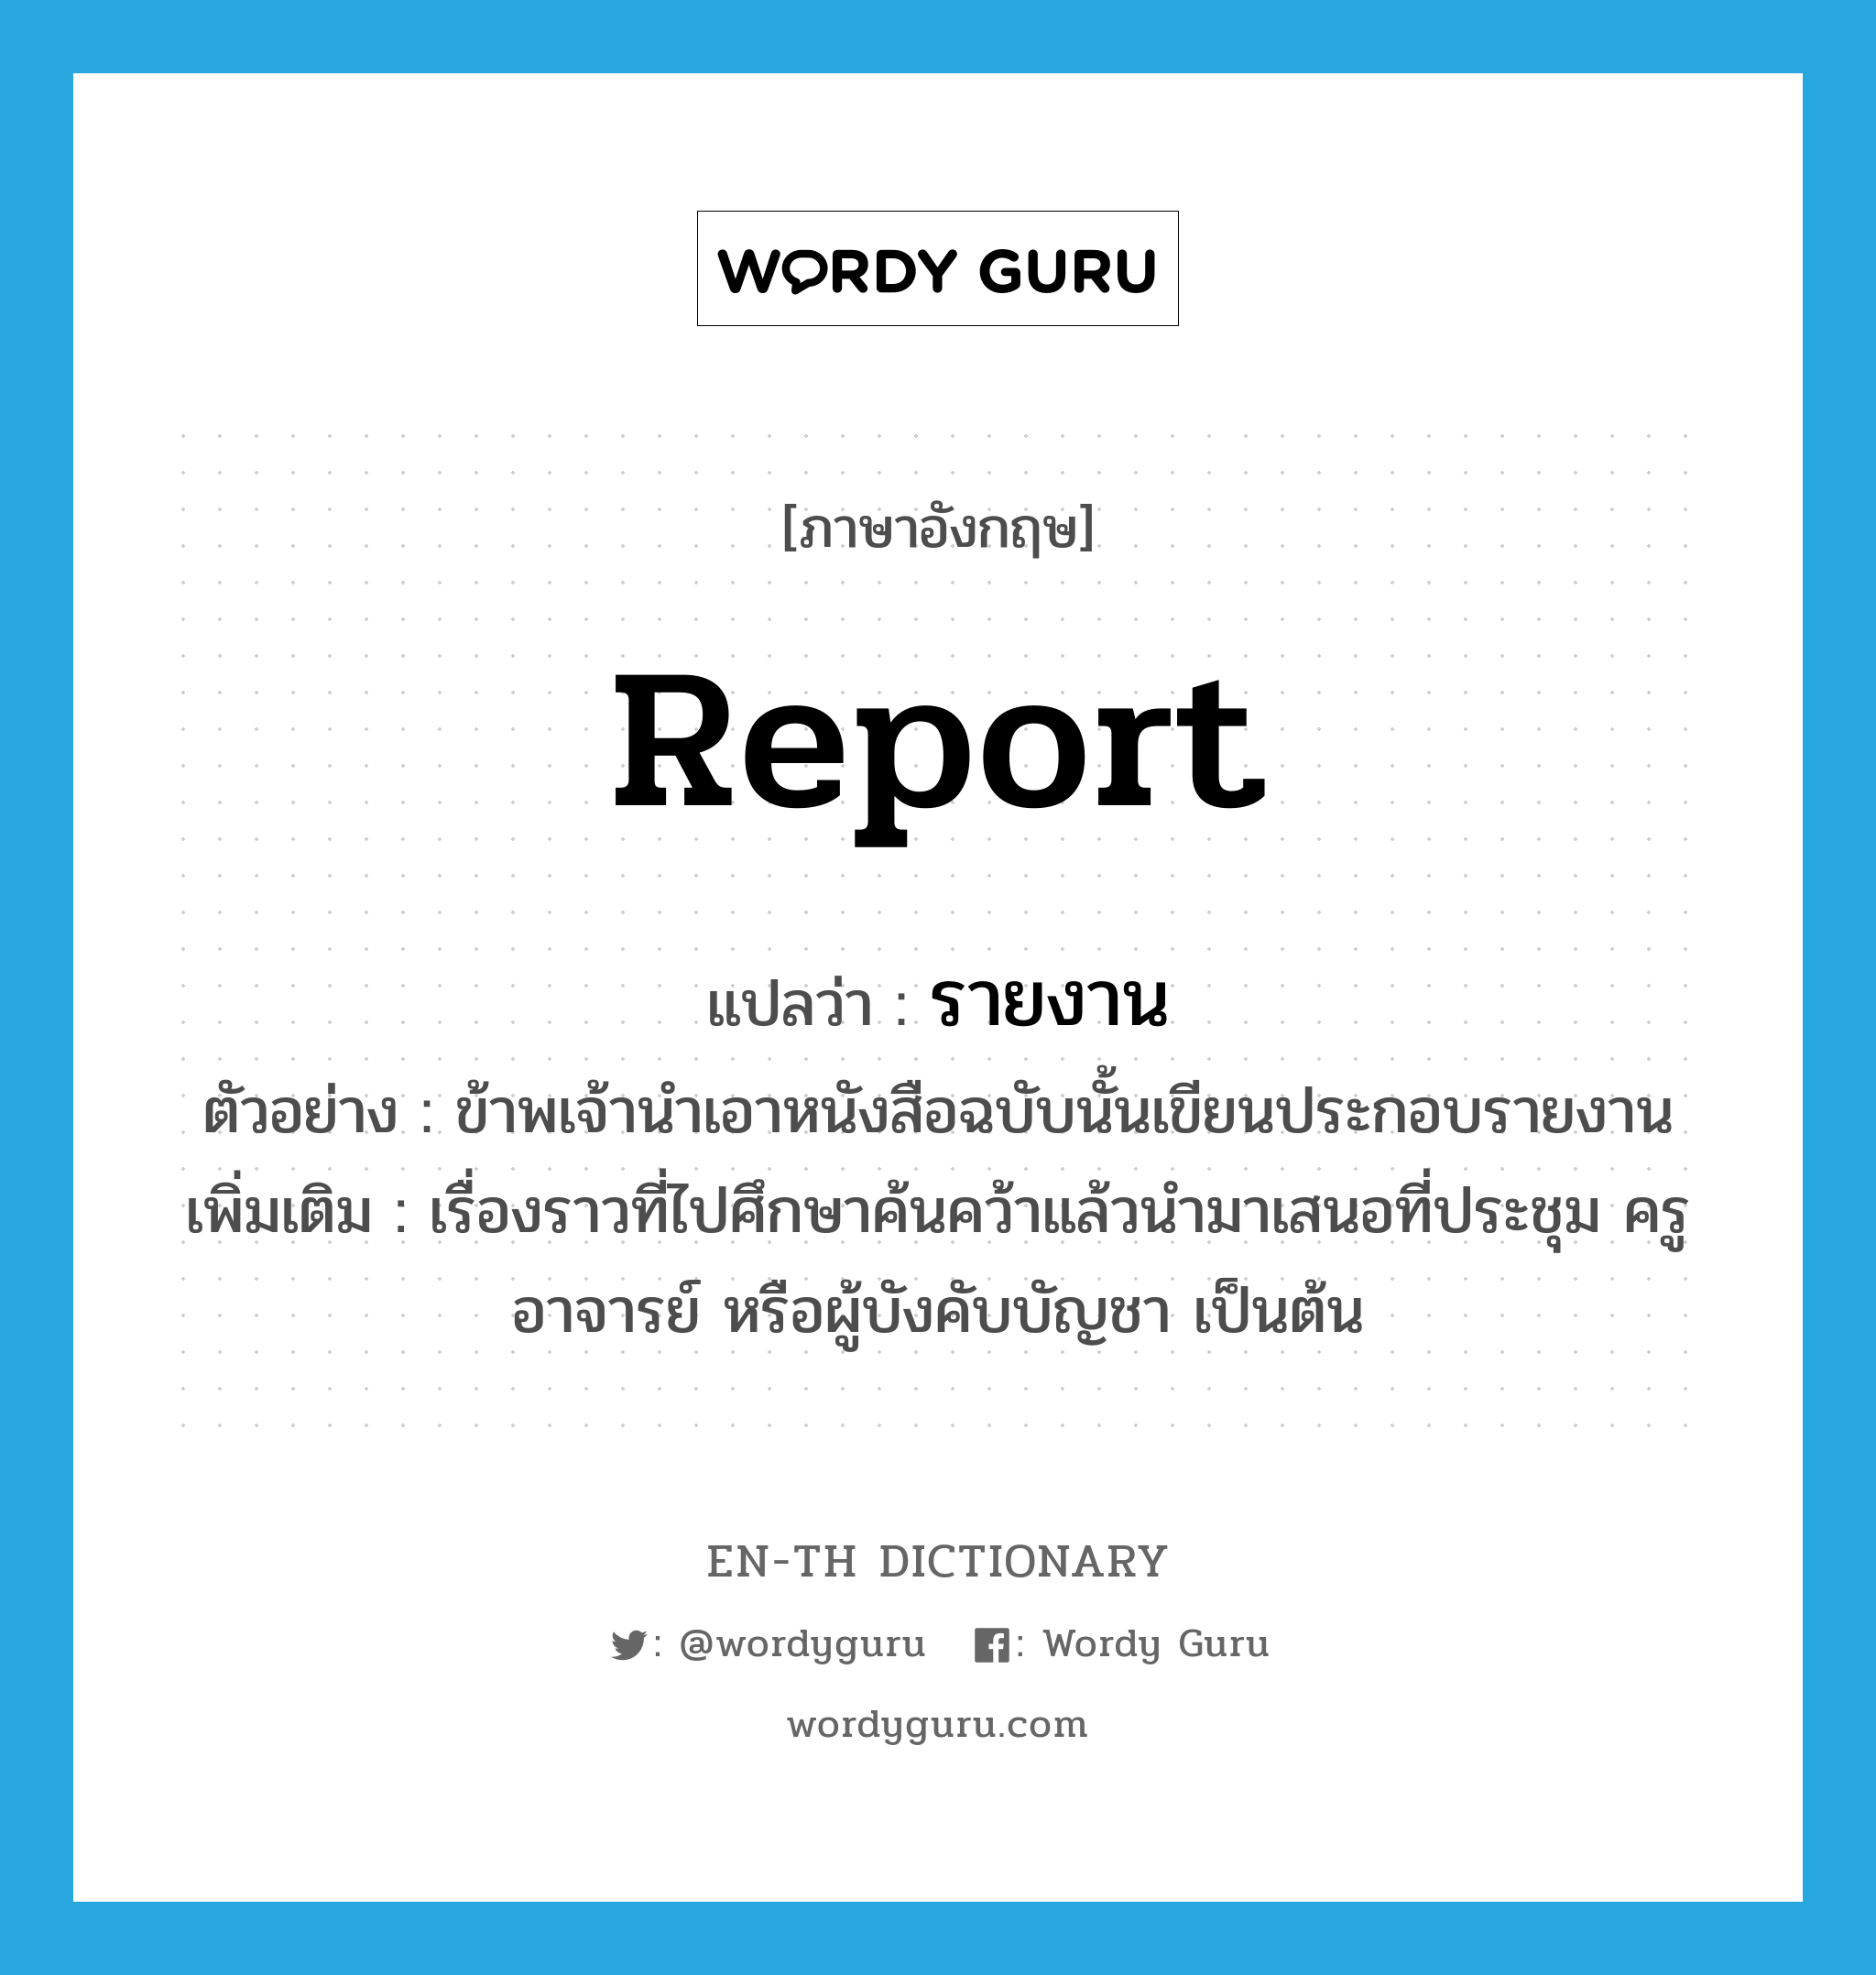 report แปลว่า?, คำศัพท์ภาษาอังกฤษ report แปลว่า รายงาน ประเภท N ตัวอย่าง ข้าพเจ้านำเอาหนังสือฉบับนั้นเขียนประกอบรายงาน เพิ่มเติม เรื่องราวที่ไปศึกษาค้นคว้าแล้วนำมาเสนอที่ประชุม ครู อาจารย์ หรือผู้บังคับบัญชา เป็นต้น หมวด N